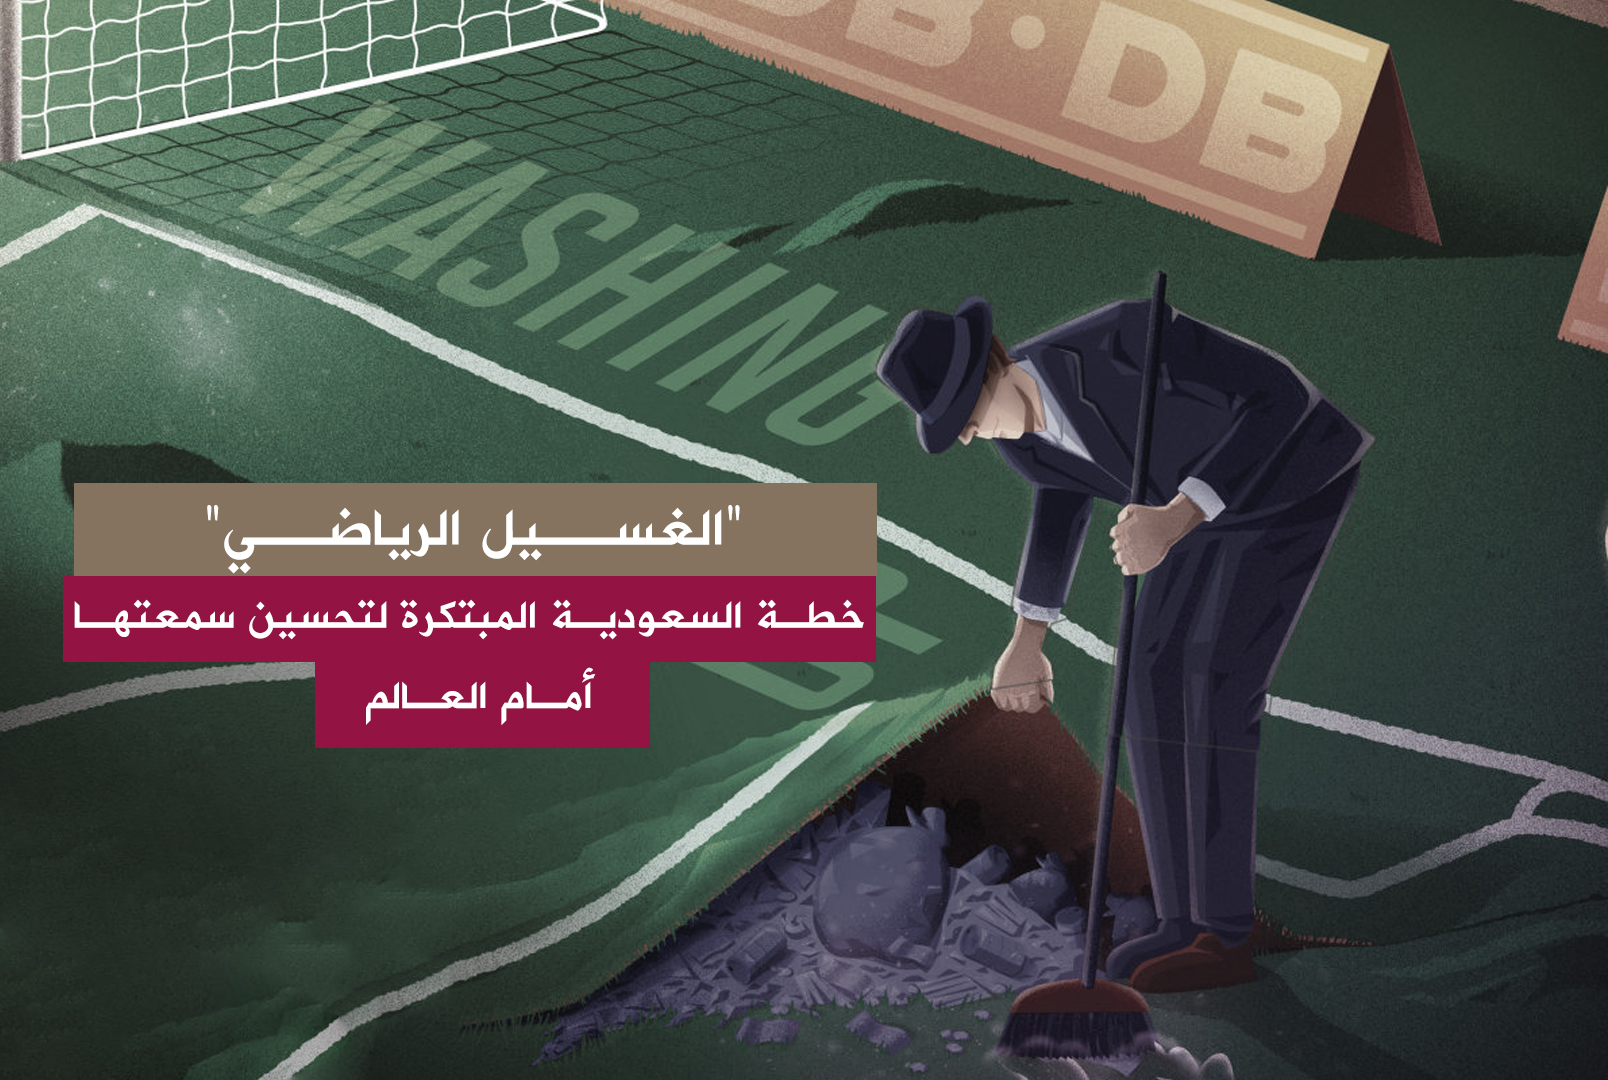 حرب ناعمة وخطط رذيلة... السعودية تلجأ "للغسيل الرياضي" لتحسين سمعتها السيئة أمام المجتمع الدولي